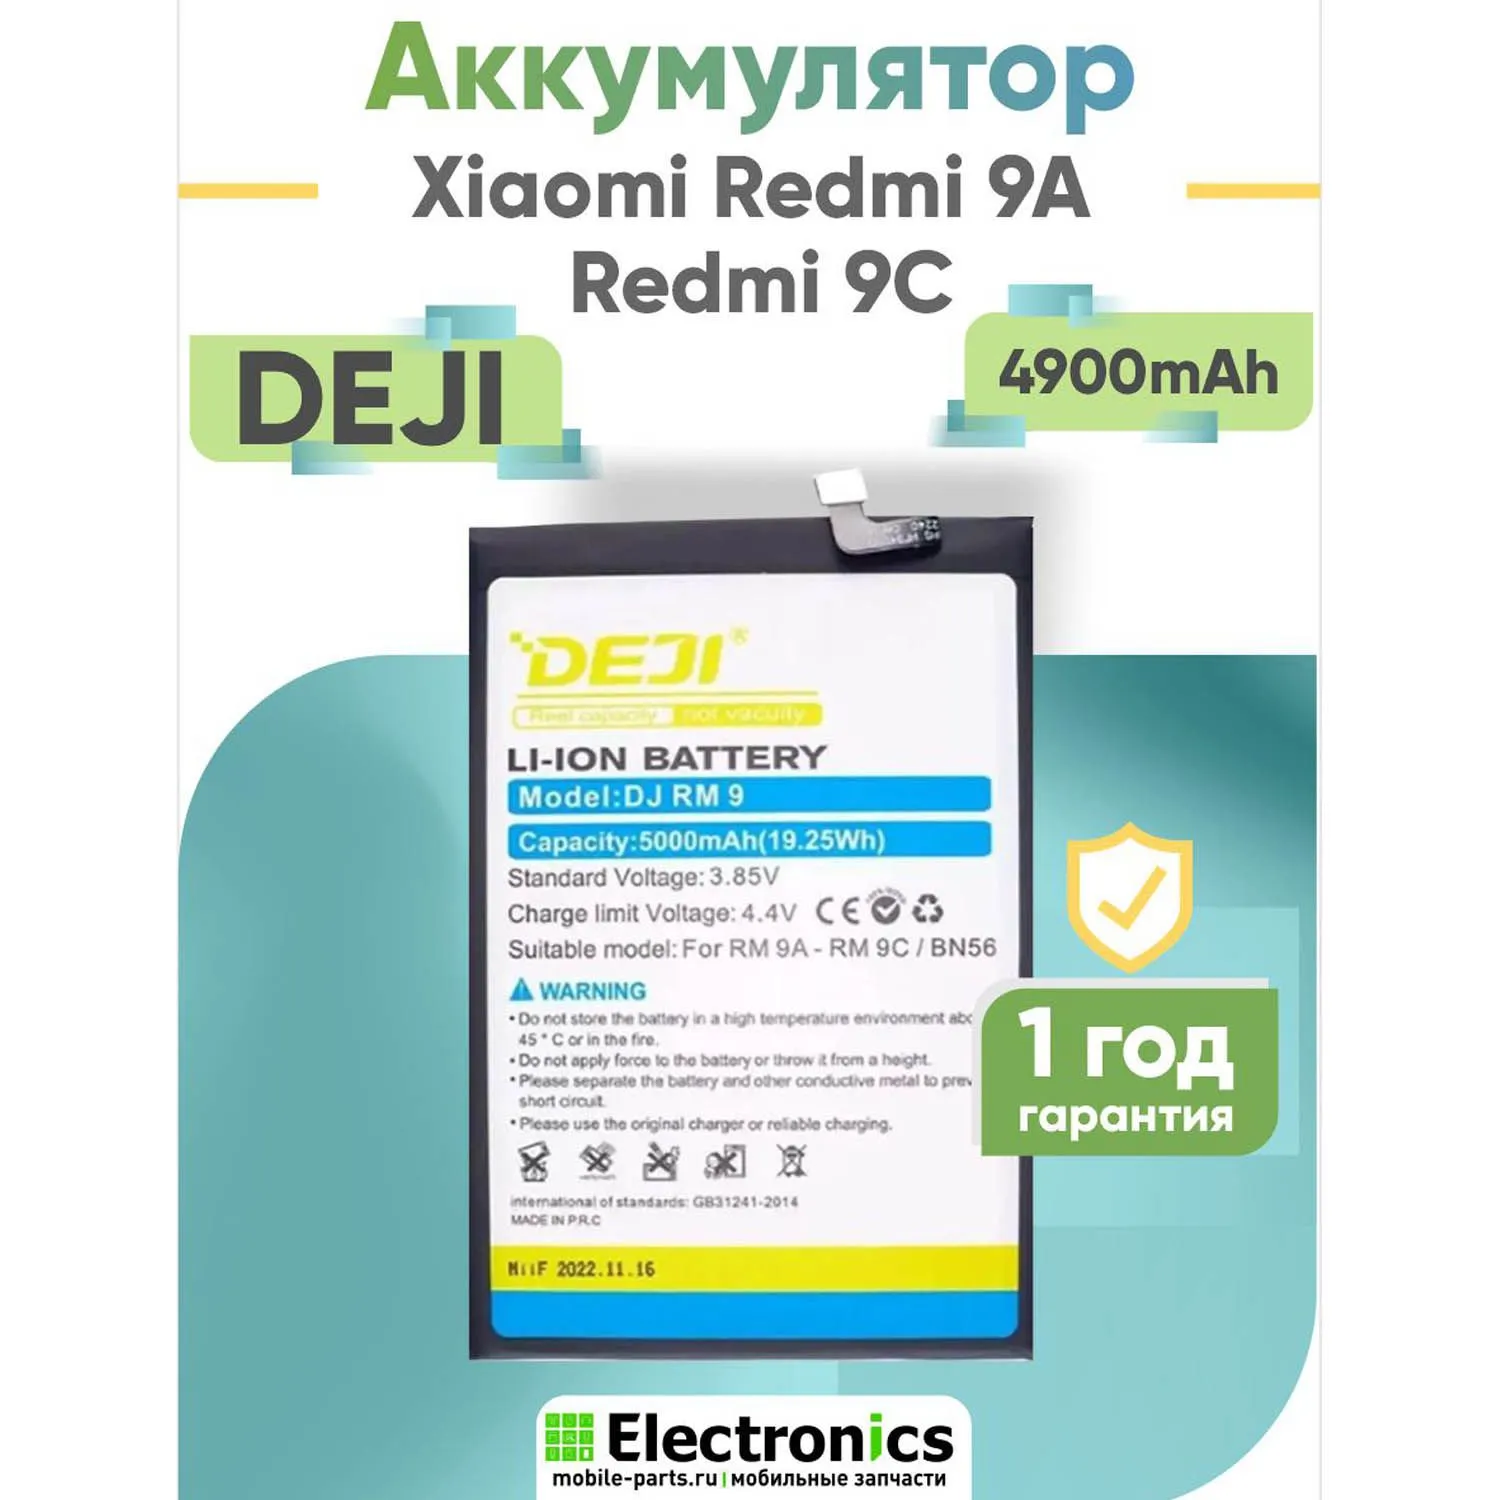 Аккумулятор DEJI Xiaomi Redmi 9A, Redmi 9C BN56 5000mAh